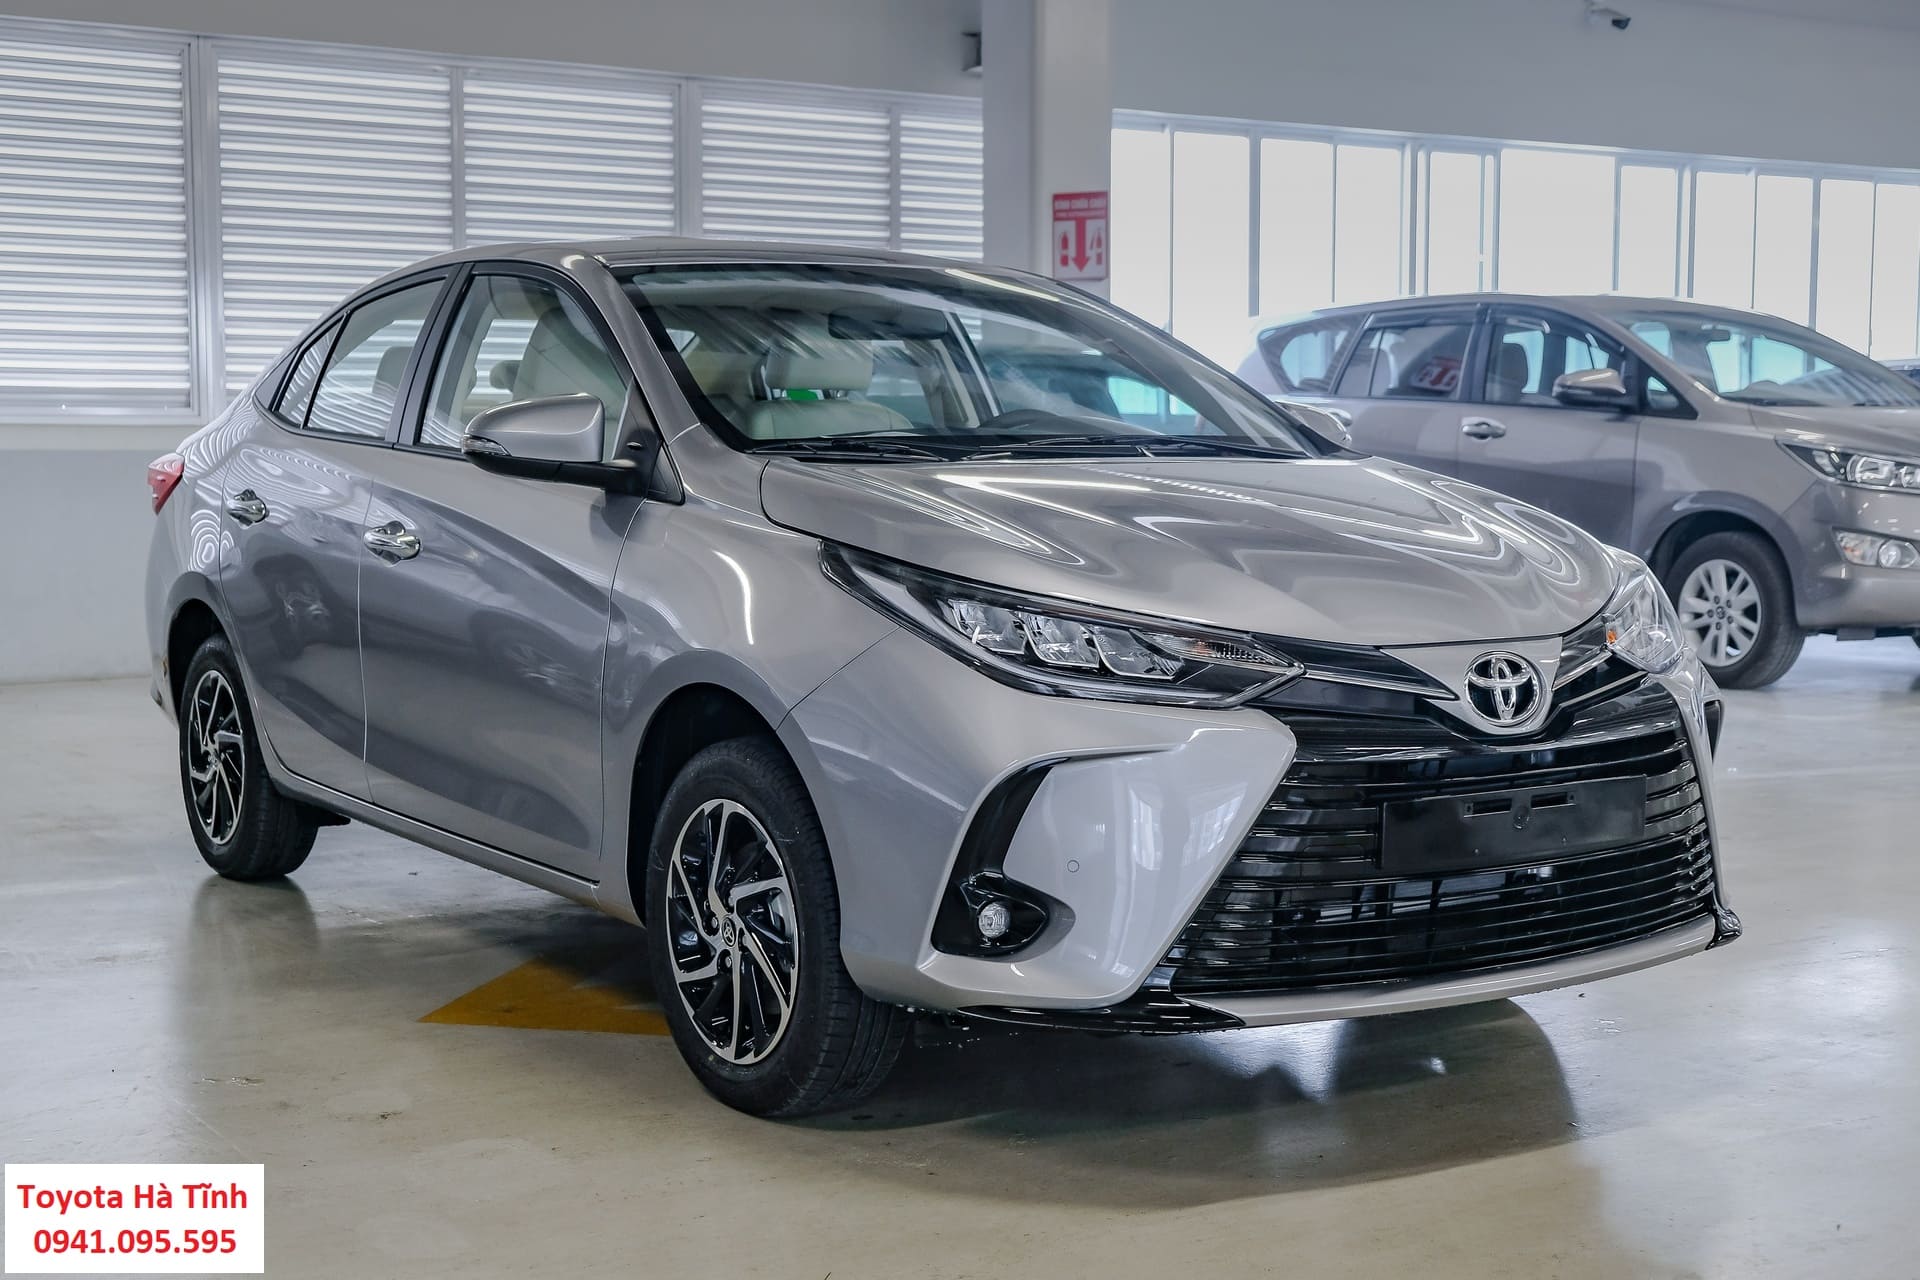 Đại lý Toyota Hà Tĩnh: Nếu bạn đang tìm kiếm một chiếc Toyota chất lượng cao từ nhà sản xuất uy tín, hãy xem qua hình ảnh và tìm hiểu về đại lý Toyota Hà Tĩnh. Với đội ngũ nhân viên chuyên nghiệp và hiện đại, bạn sẽ được trải nghiệm dịch vụ tốt nhất và sự tin tưởng của nhà sản xuất.